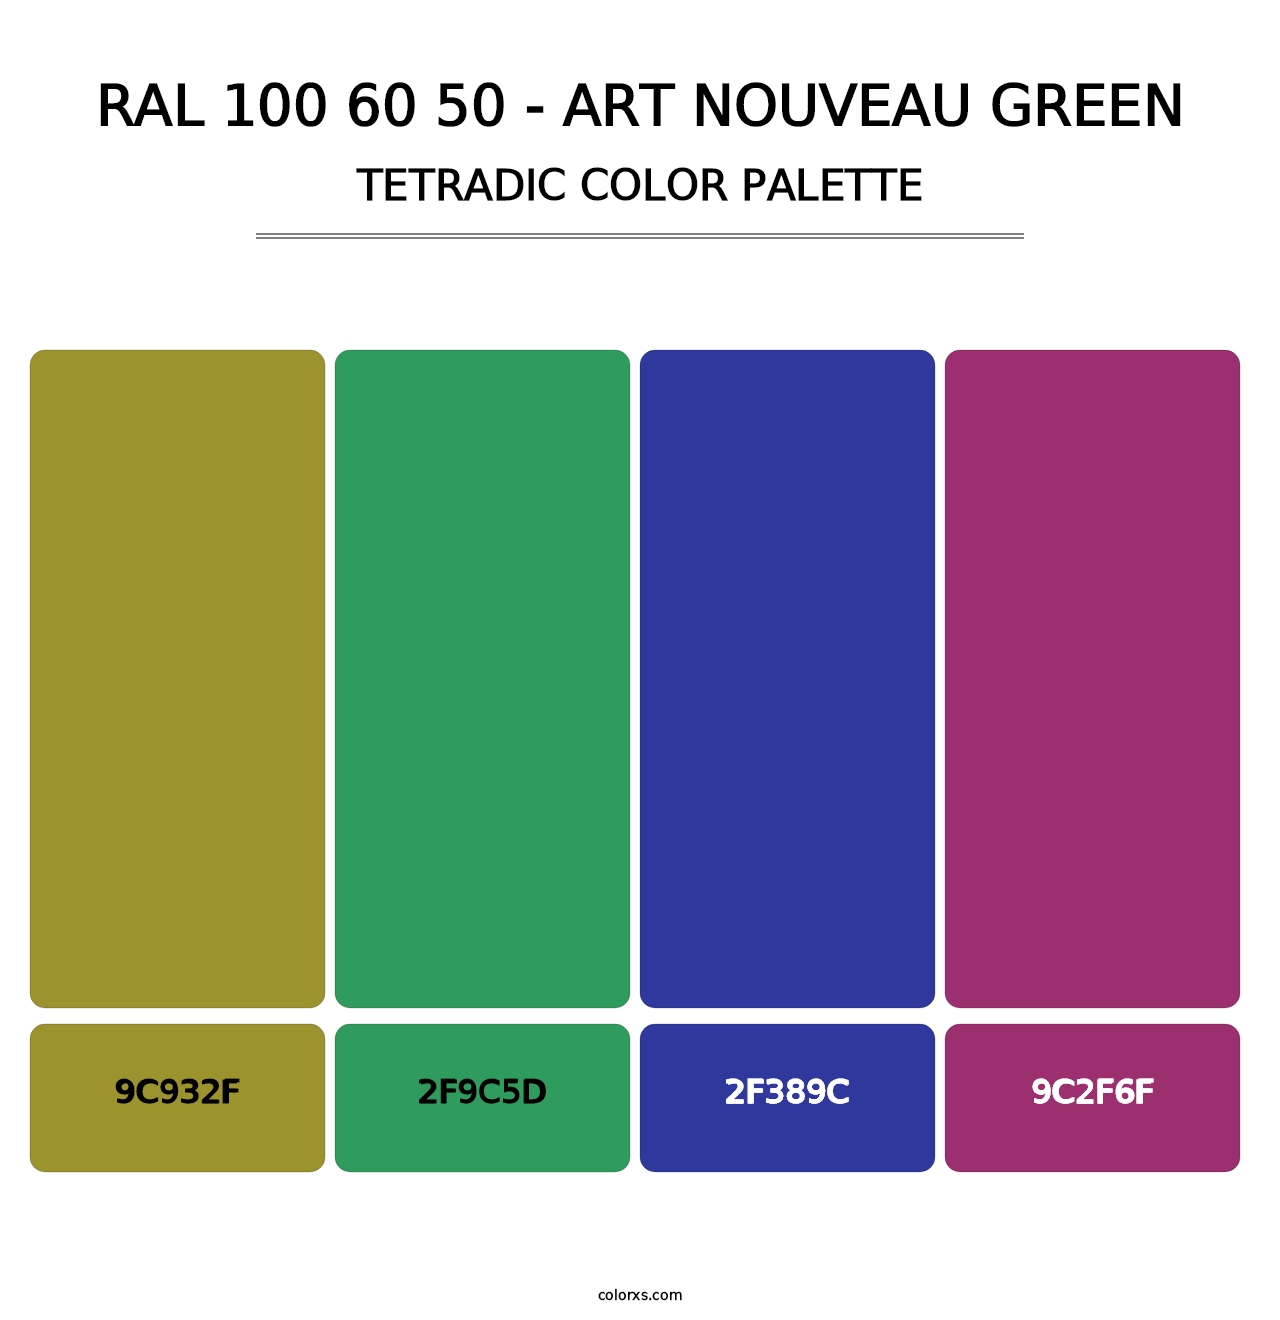 RAL 100 60 50 - Art Nouveau Green - Tetradic Color Palette